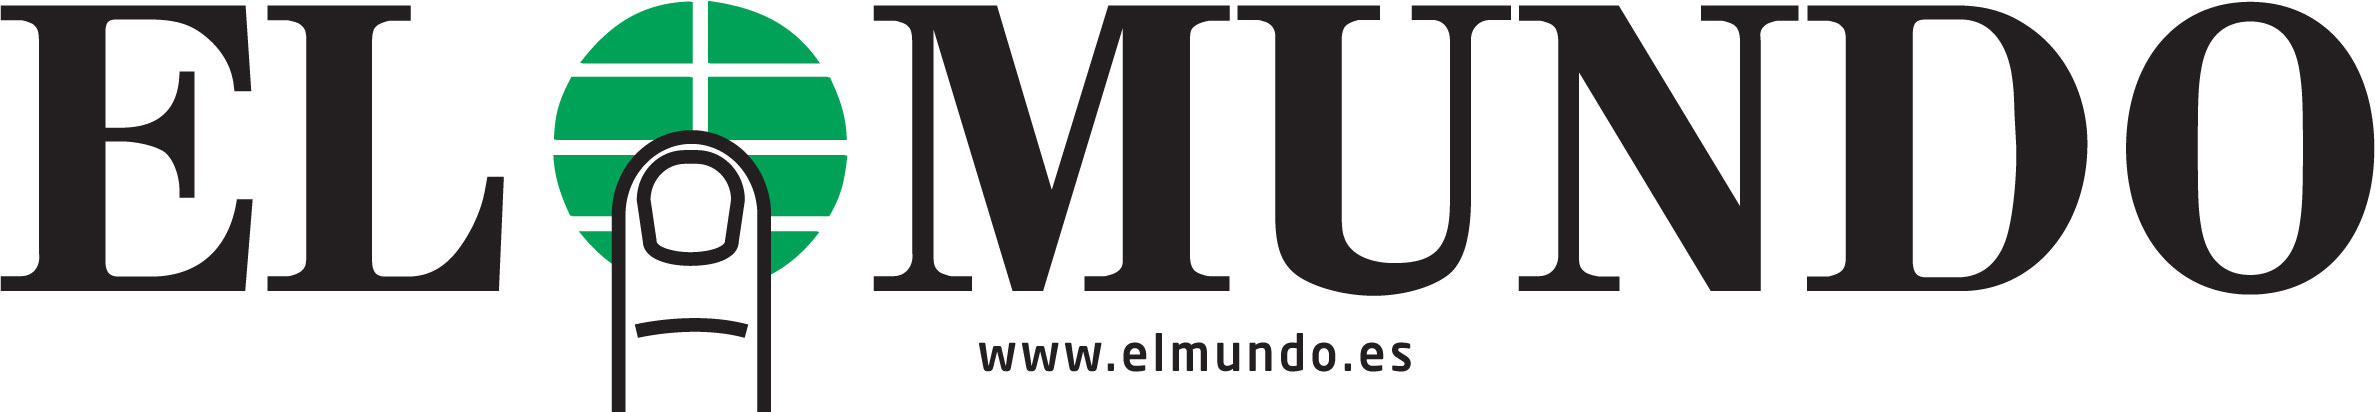 logo_elmundo